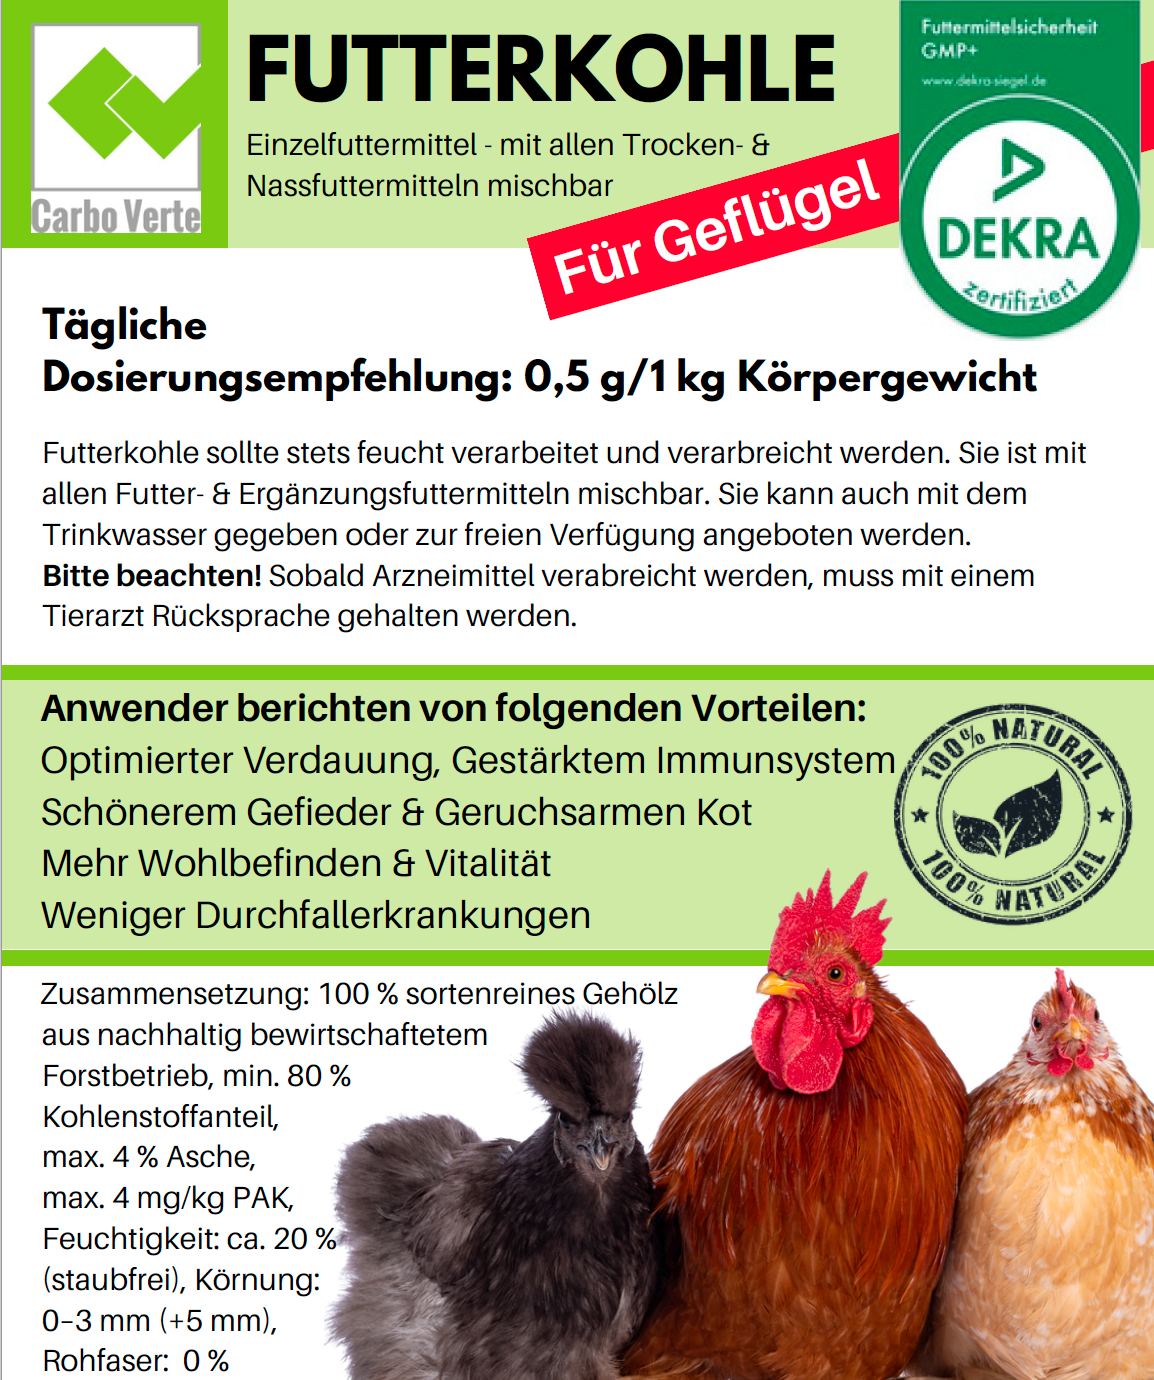 Futterkohle für Hühner zur Verdauungsförderung und bei Durchfall